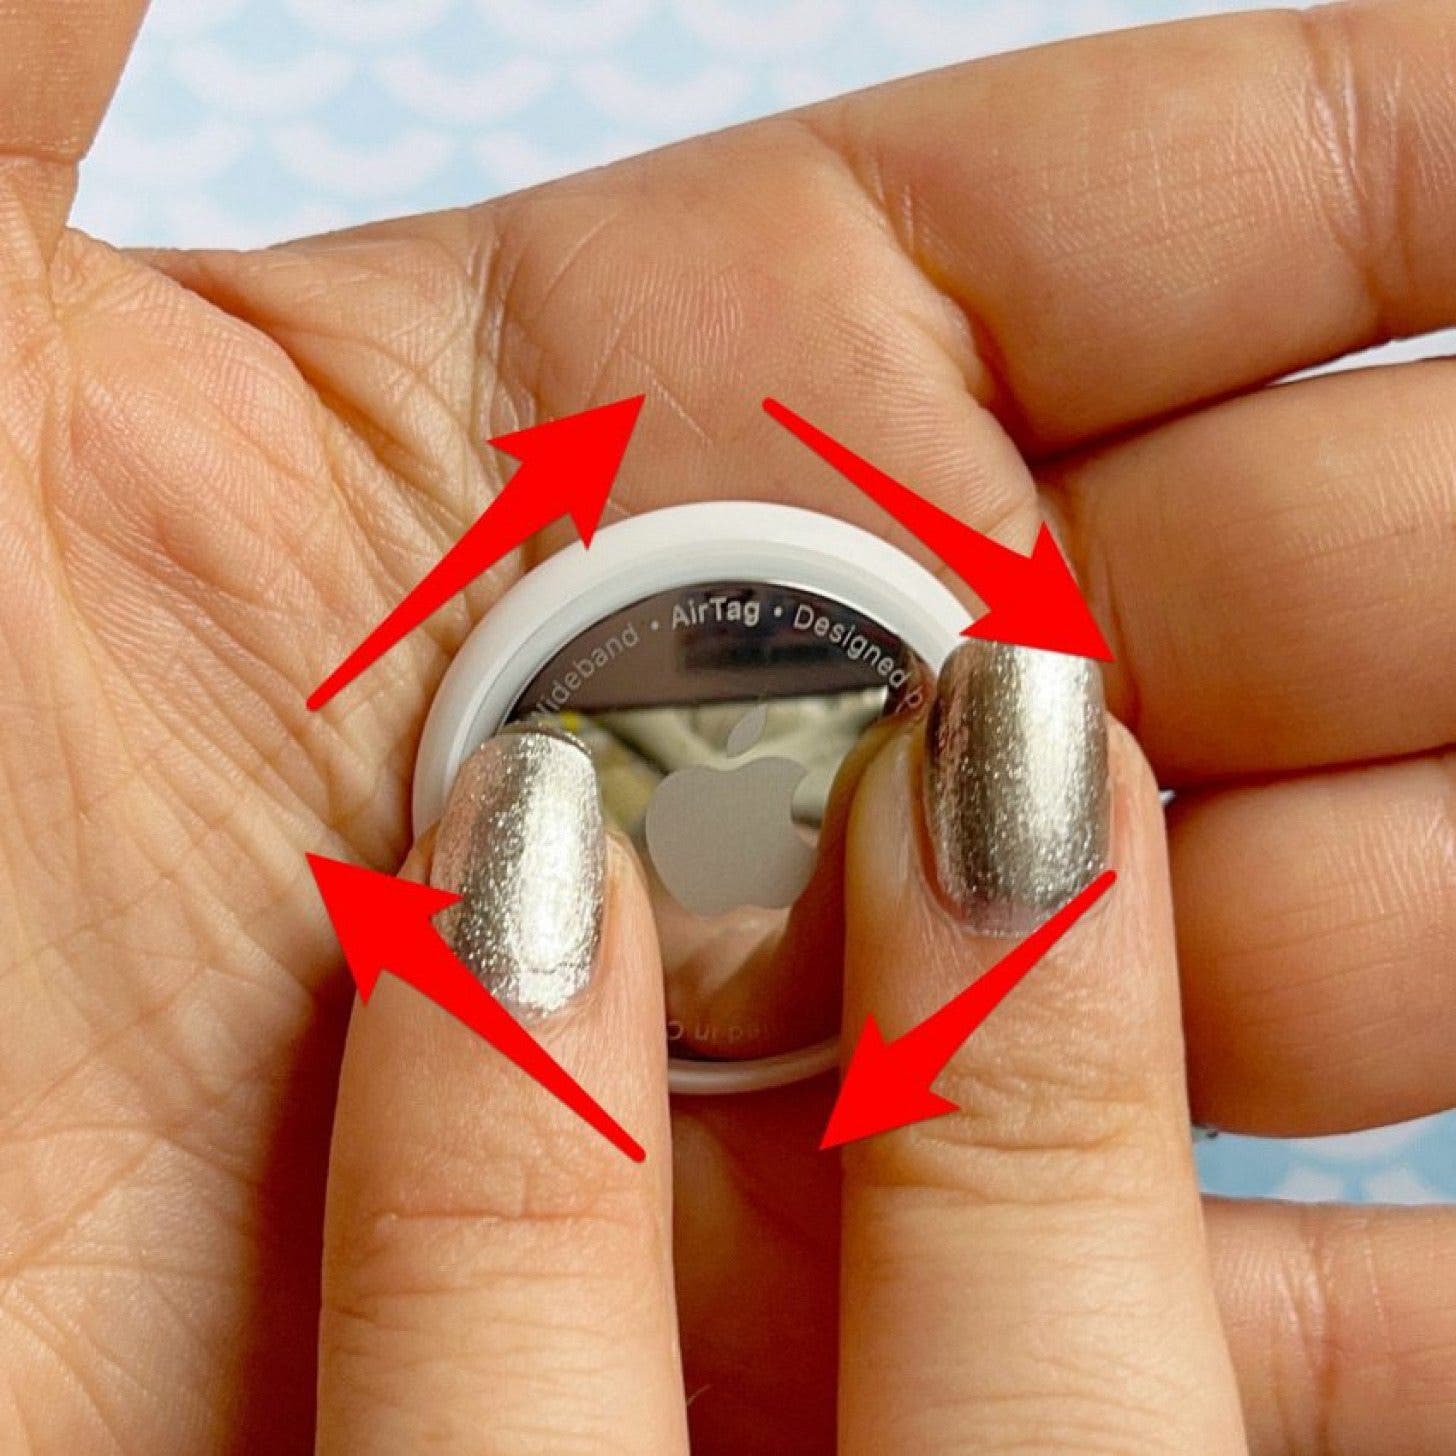 Coloque la nueva batería adentro y gire la tapa en el sentido de las agujas del reloj hasta que quede bien sellada.